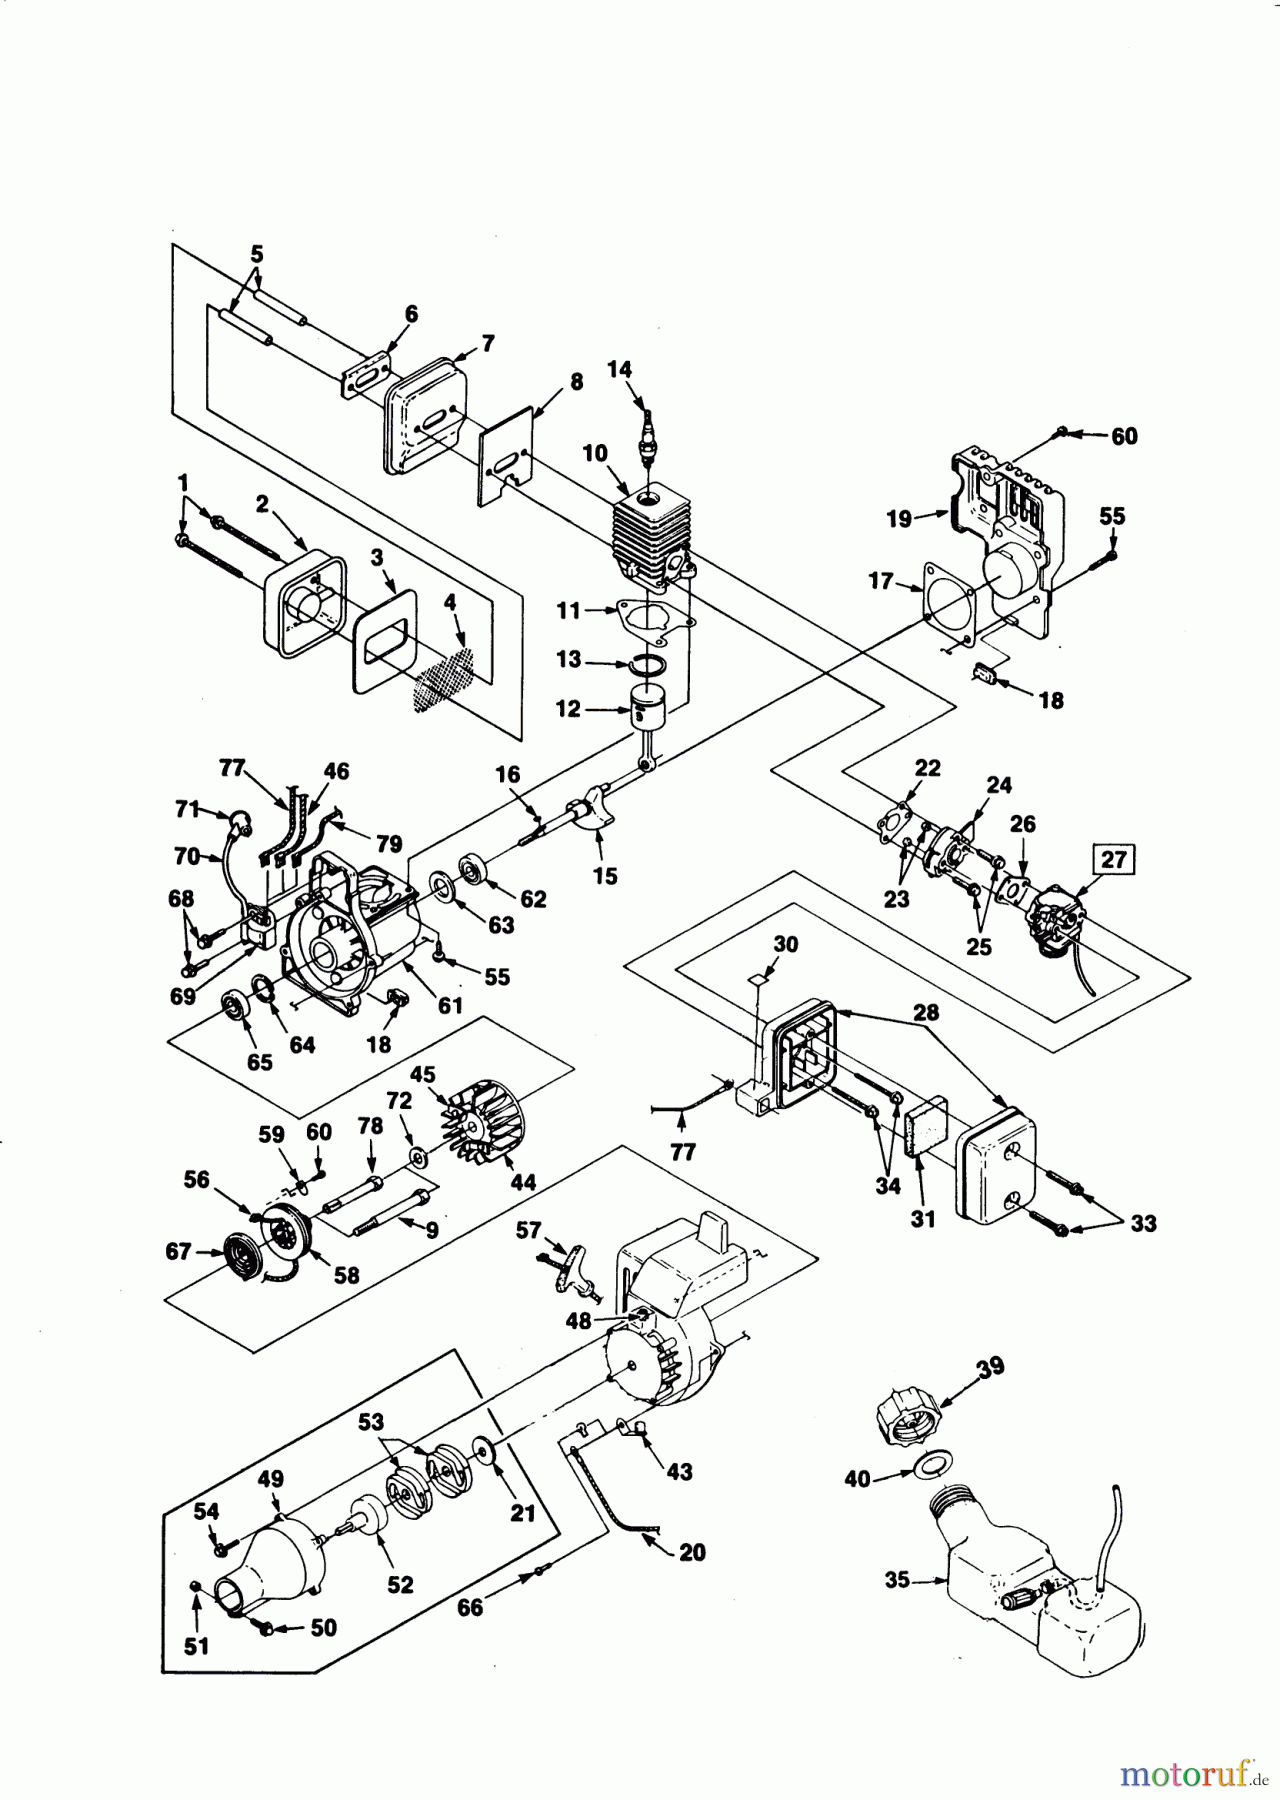  AL-KO Gartentechnik Motorsensen BC 250 Seite 1